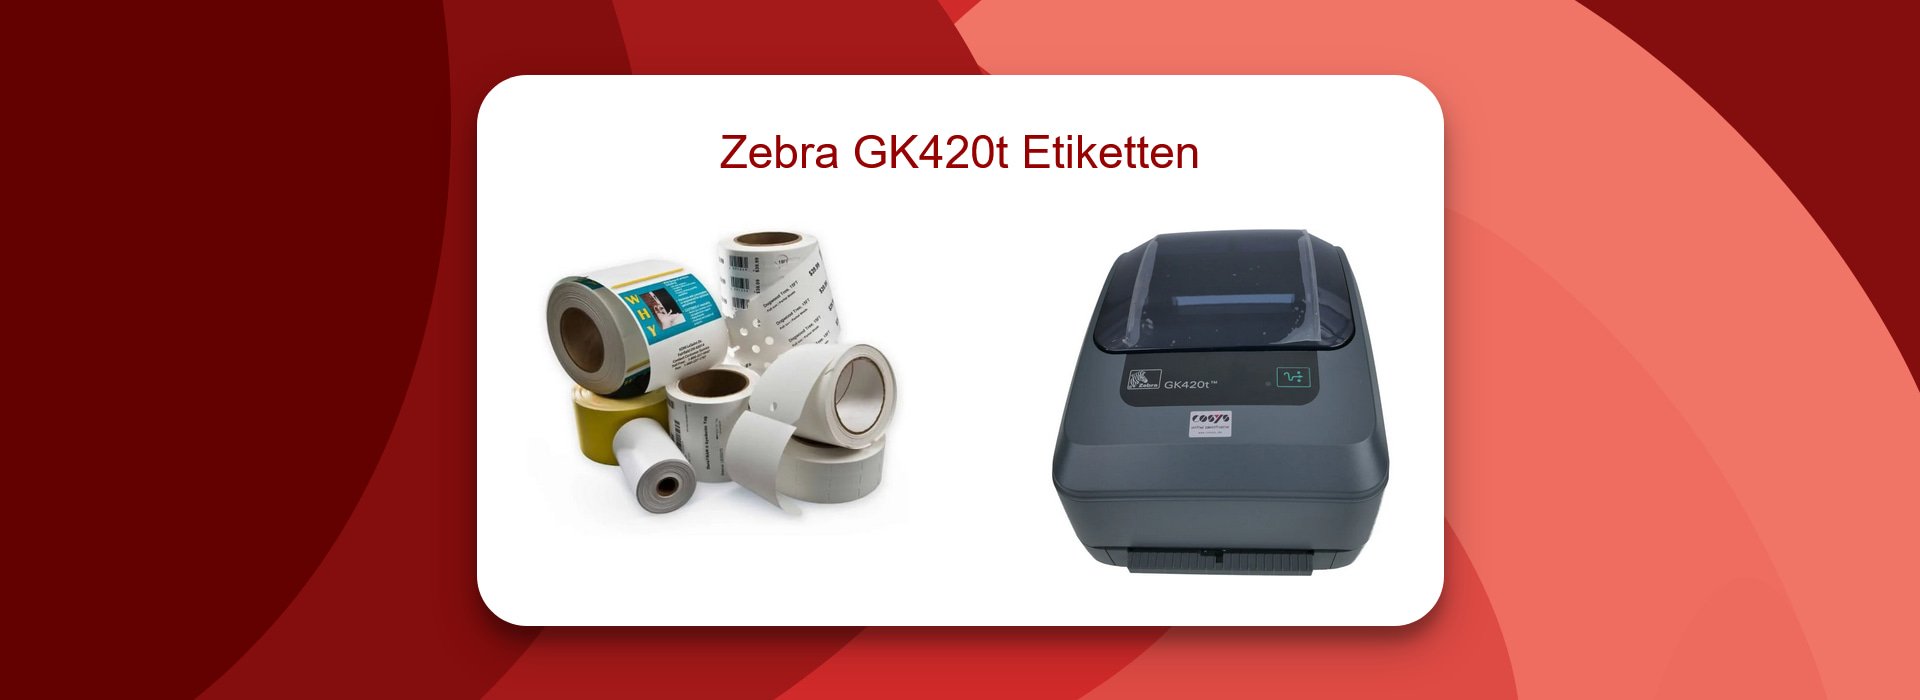 Effizienzsteigerung mit Zebra GK420t Etiketten